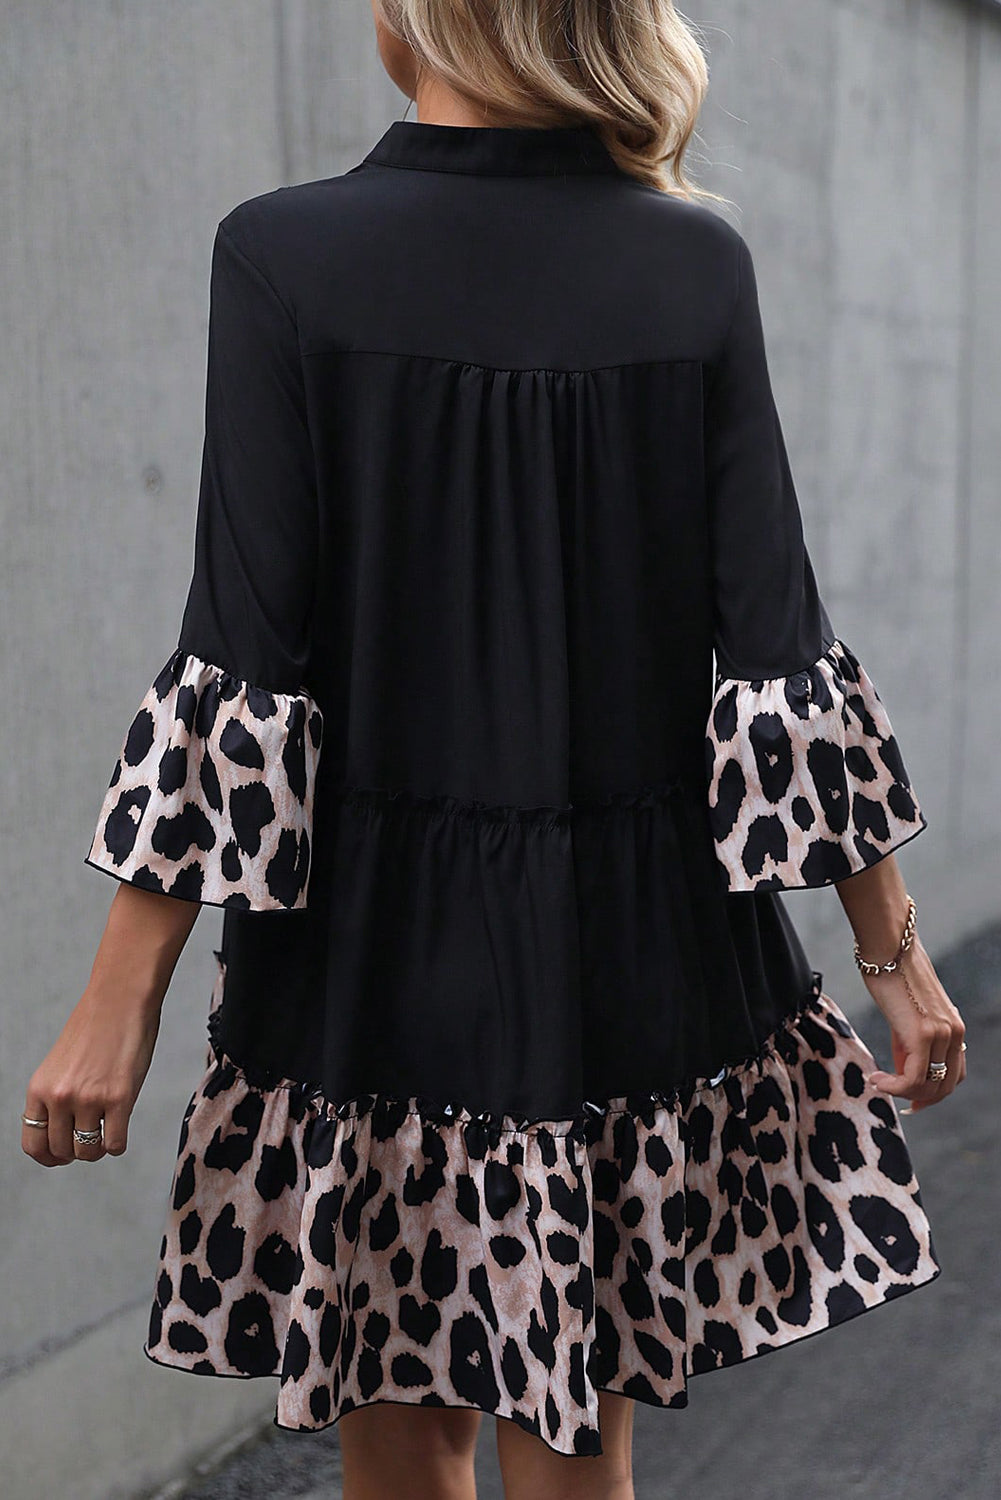 Schwarzes, kurviges Kleid mit Leoparden-Patchwork, geteiltem Ausschnitt und Rüschen